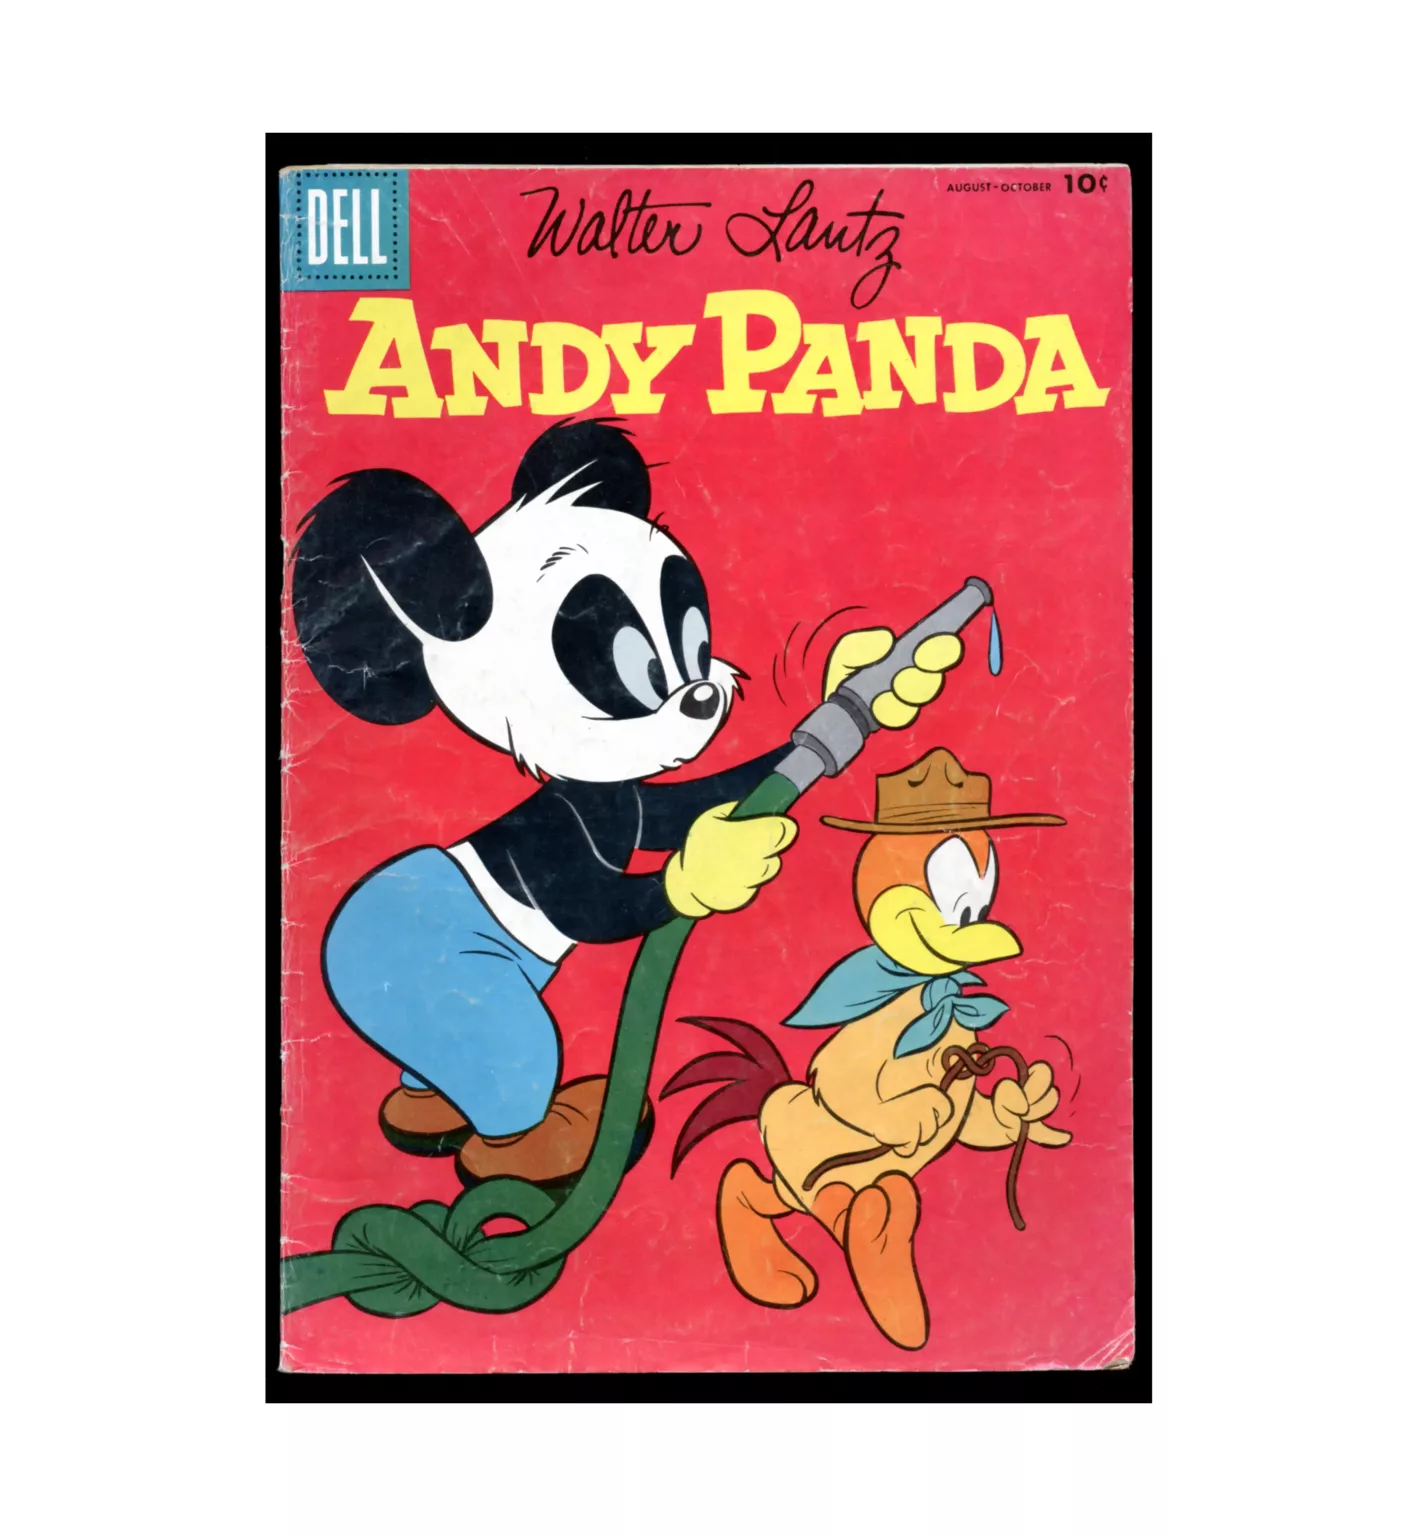 Andy Panda #35 1956 Dell Comics